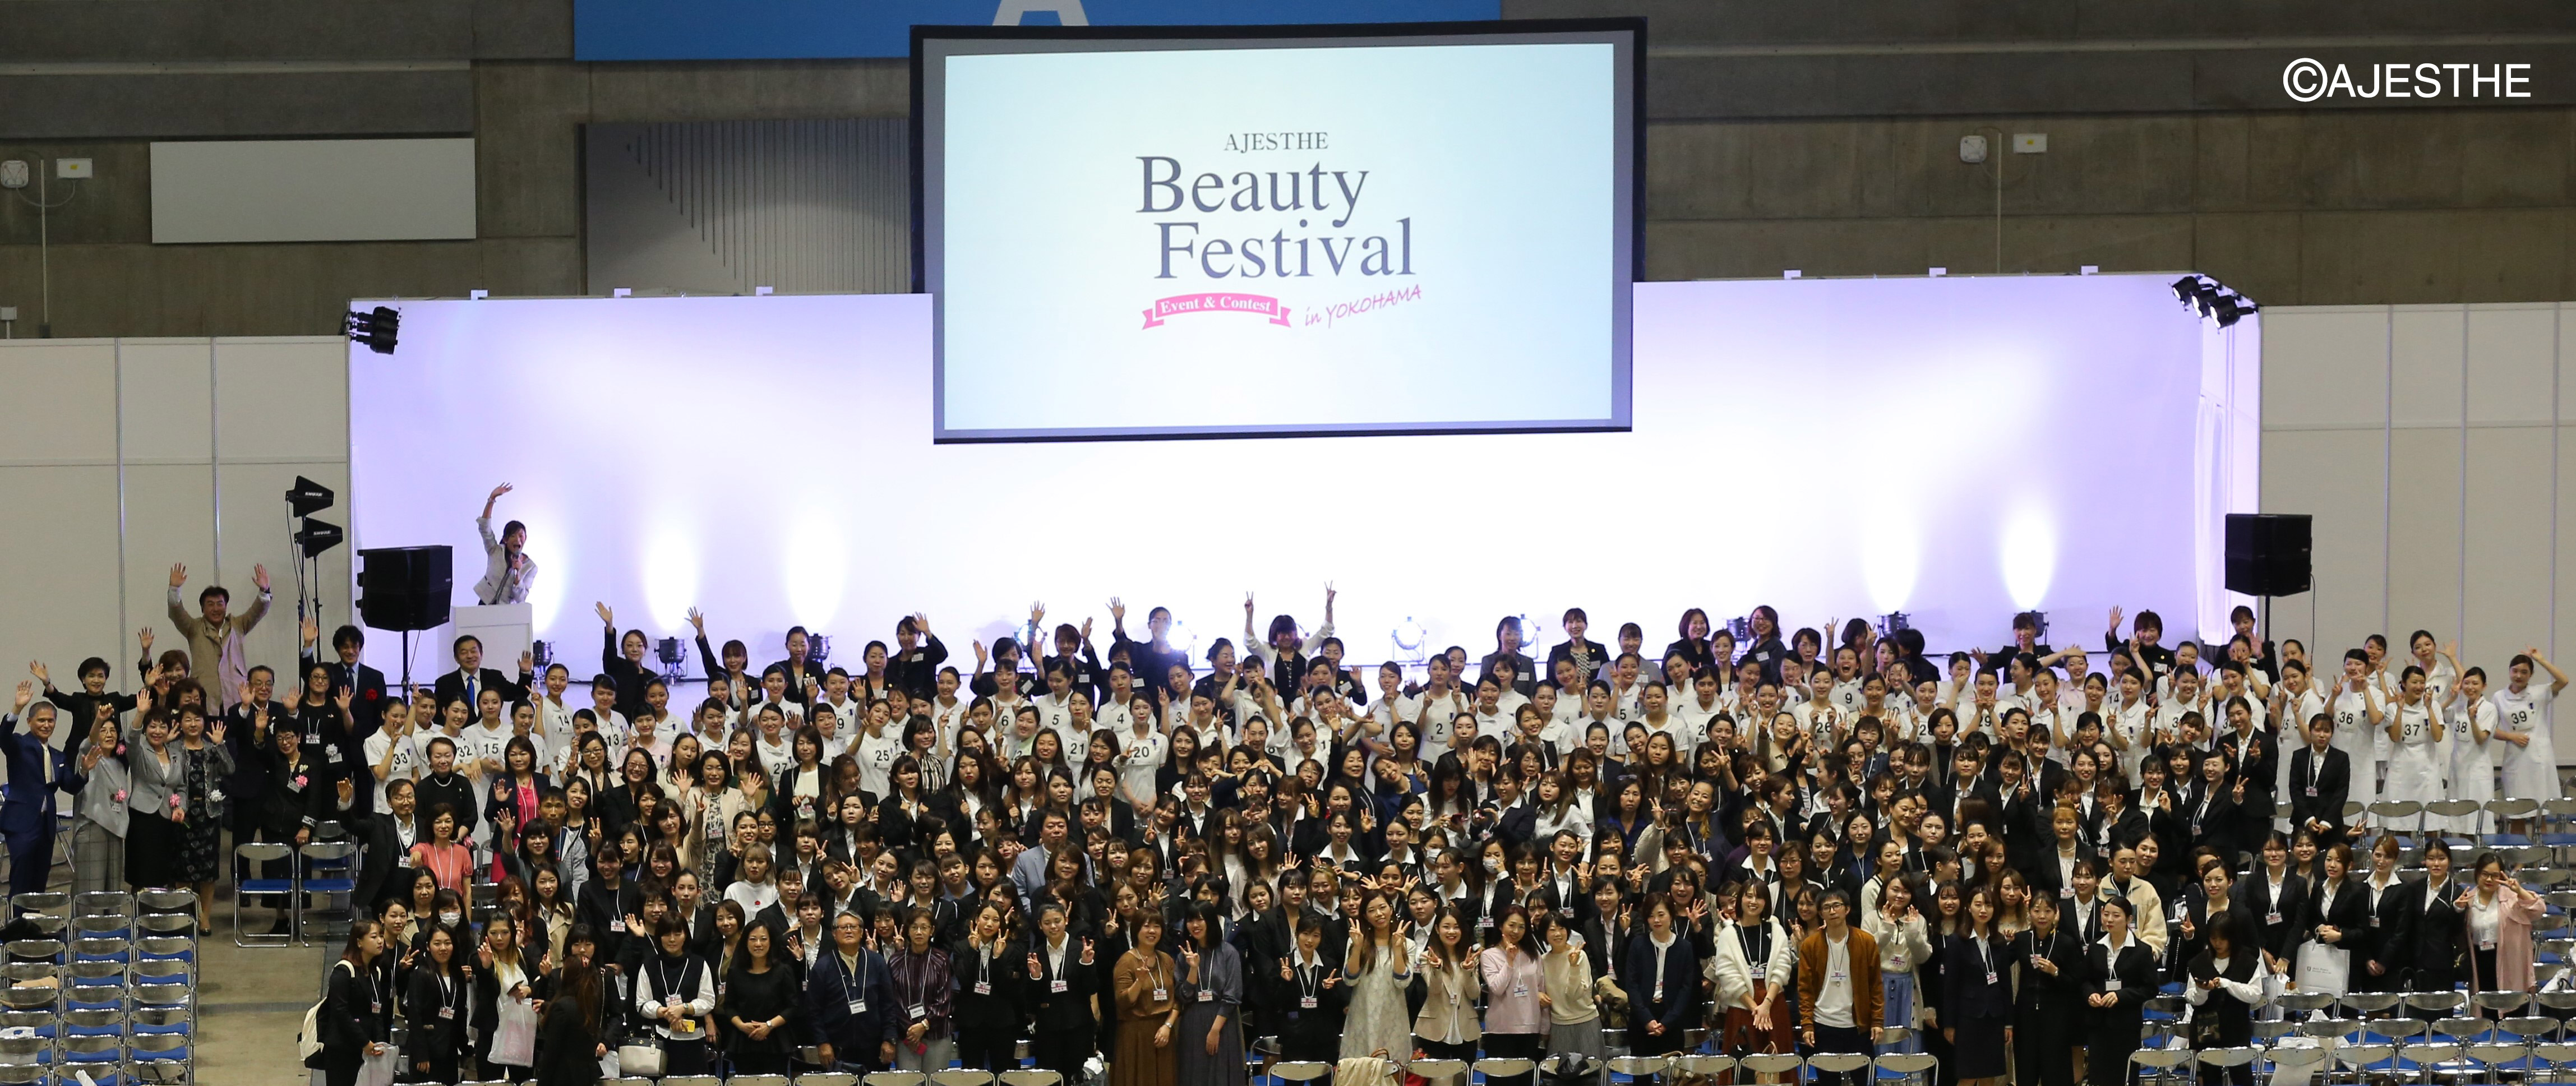 エステティックの魅力を啓発する美の祭典 Ajesthe Beauty Festival In Yokohama 初開催 Newscast